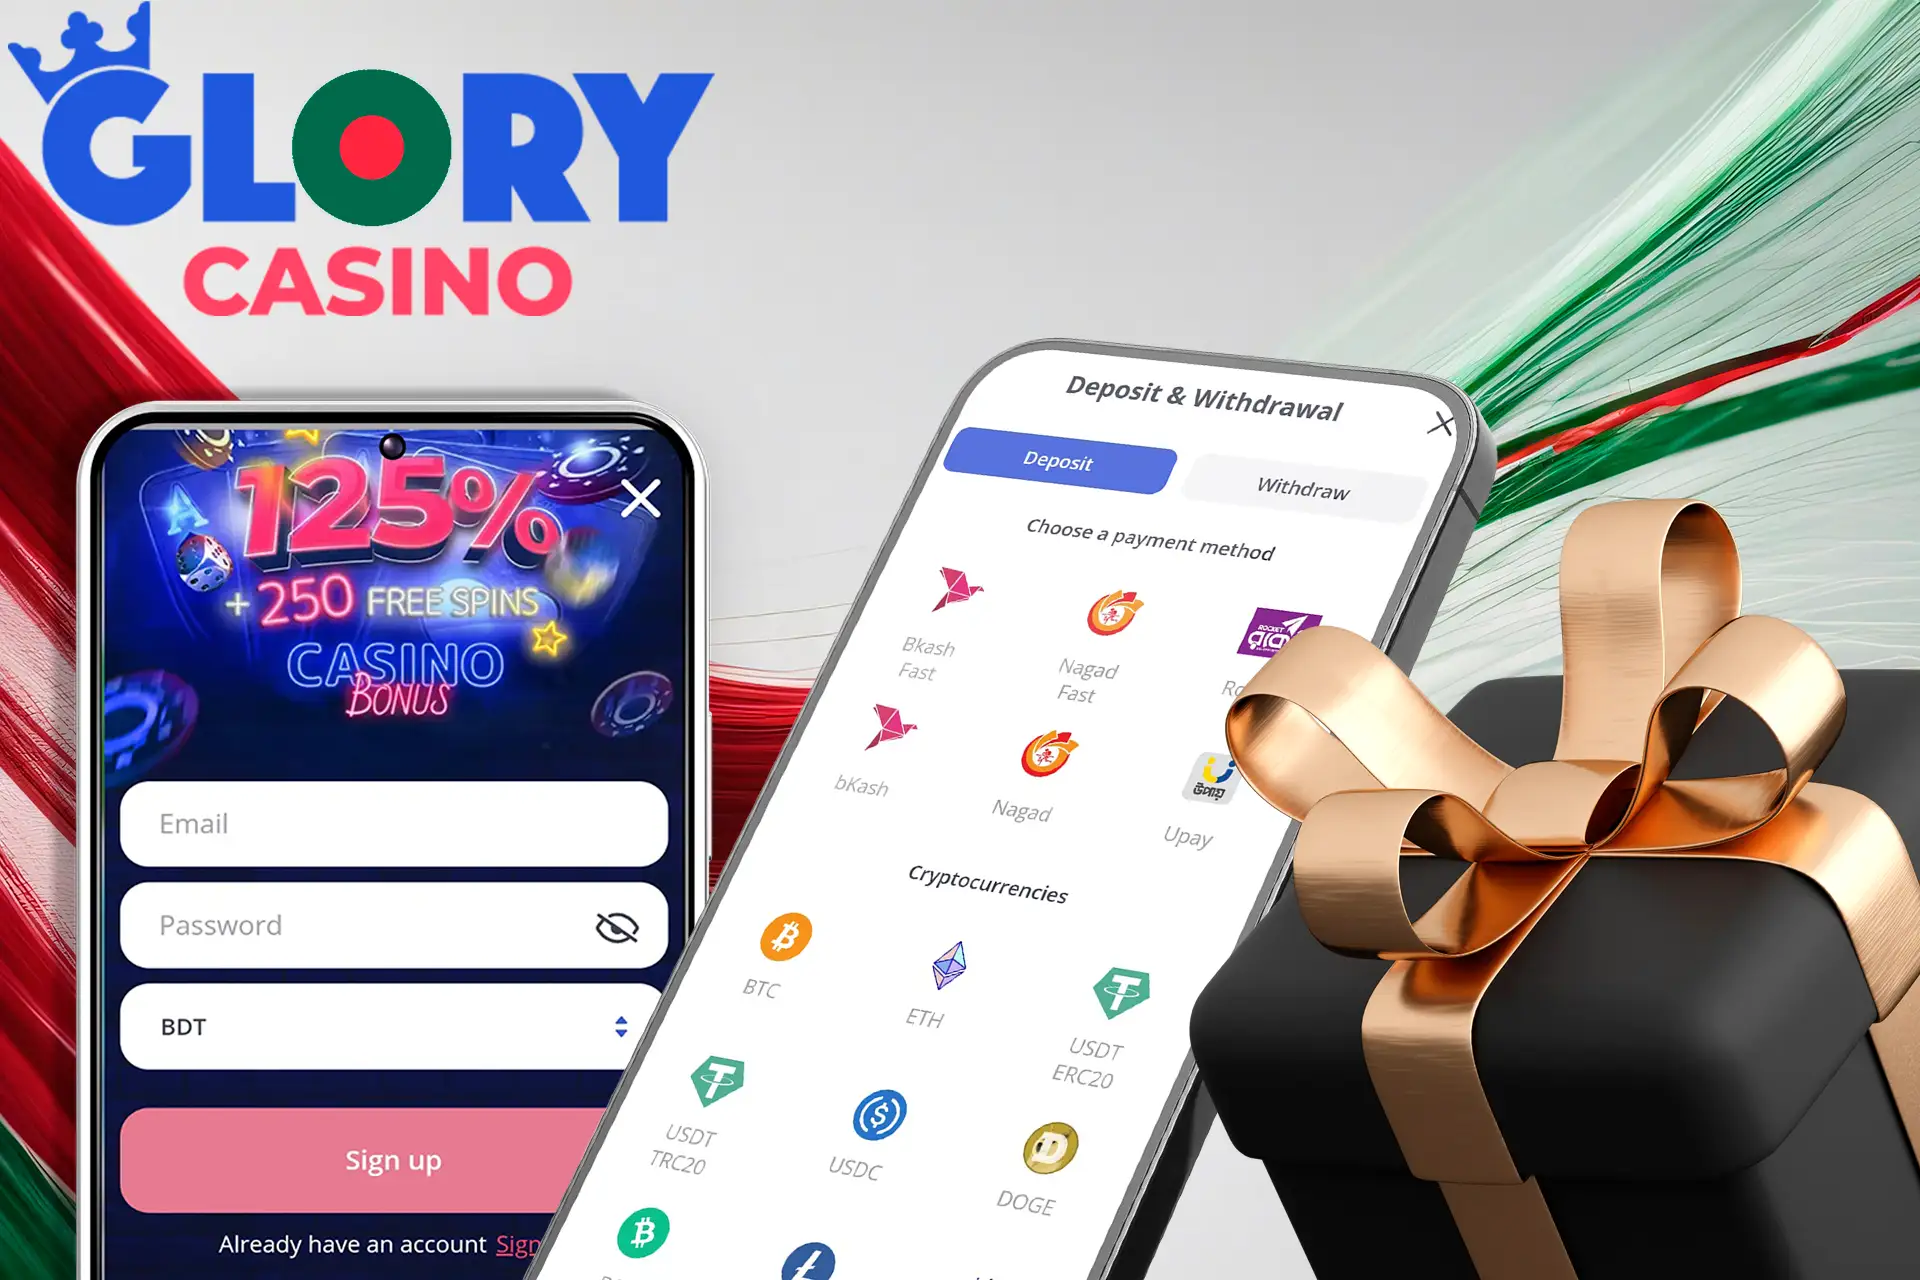 Claim your welcome bonus from Glory Casino Bangladesh